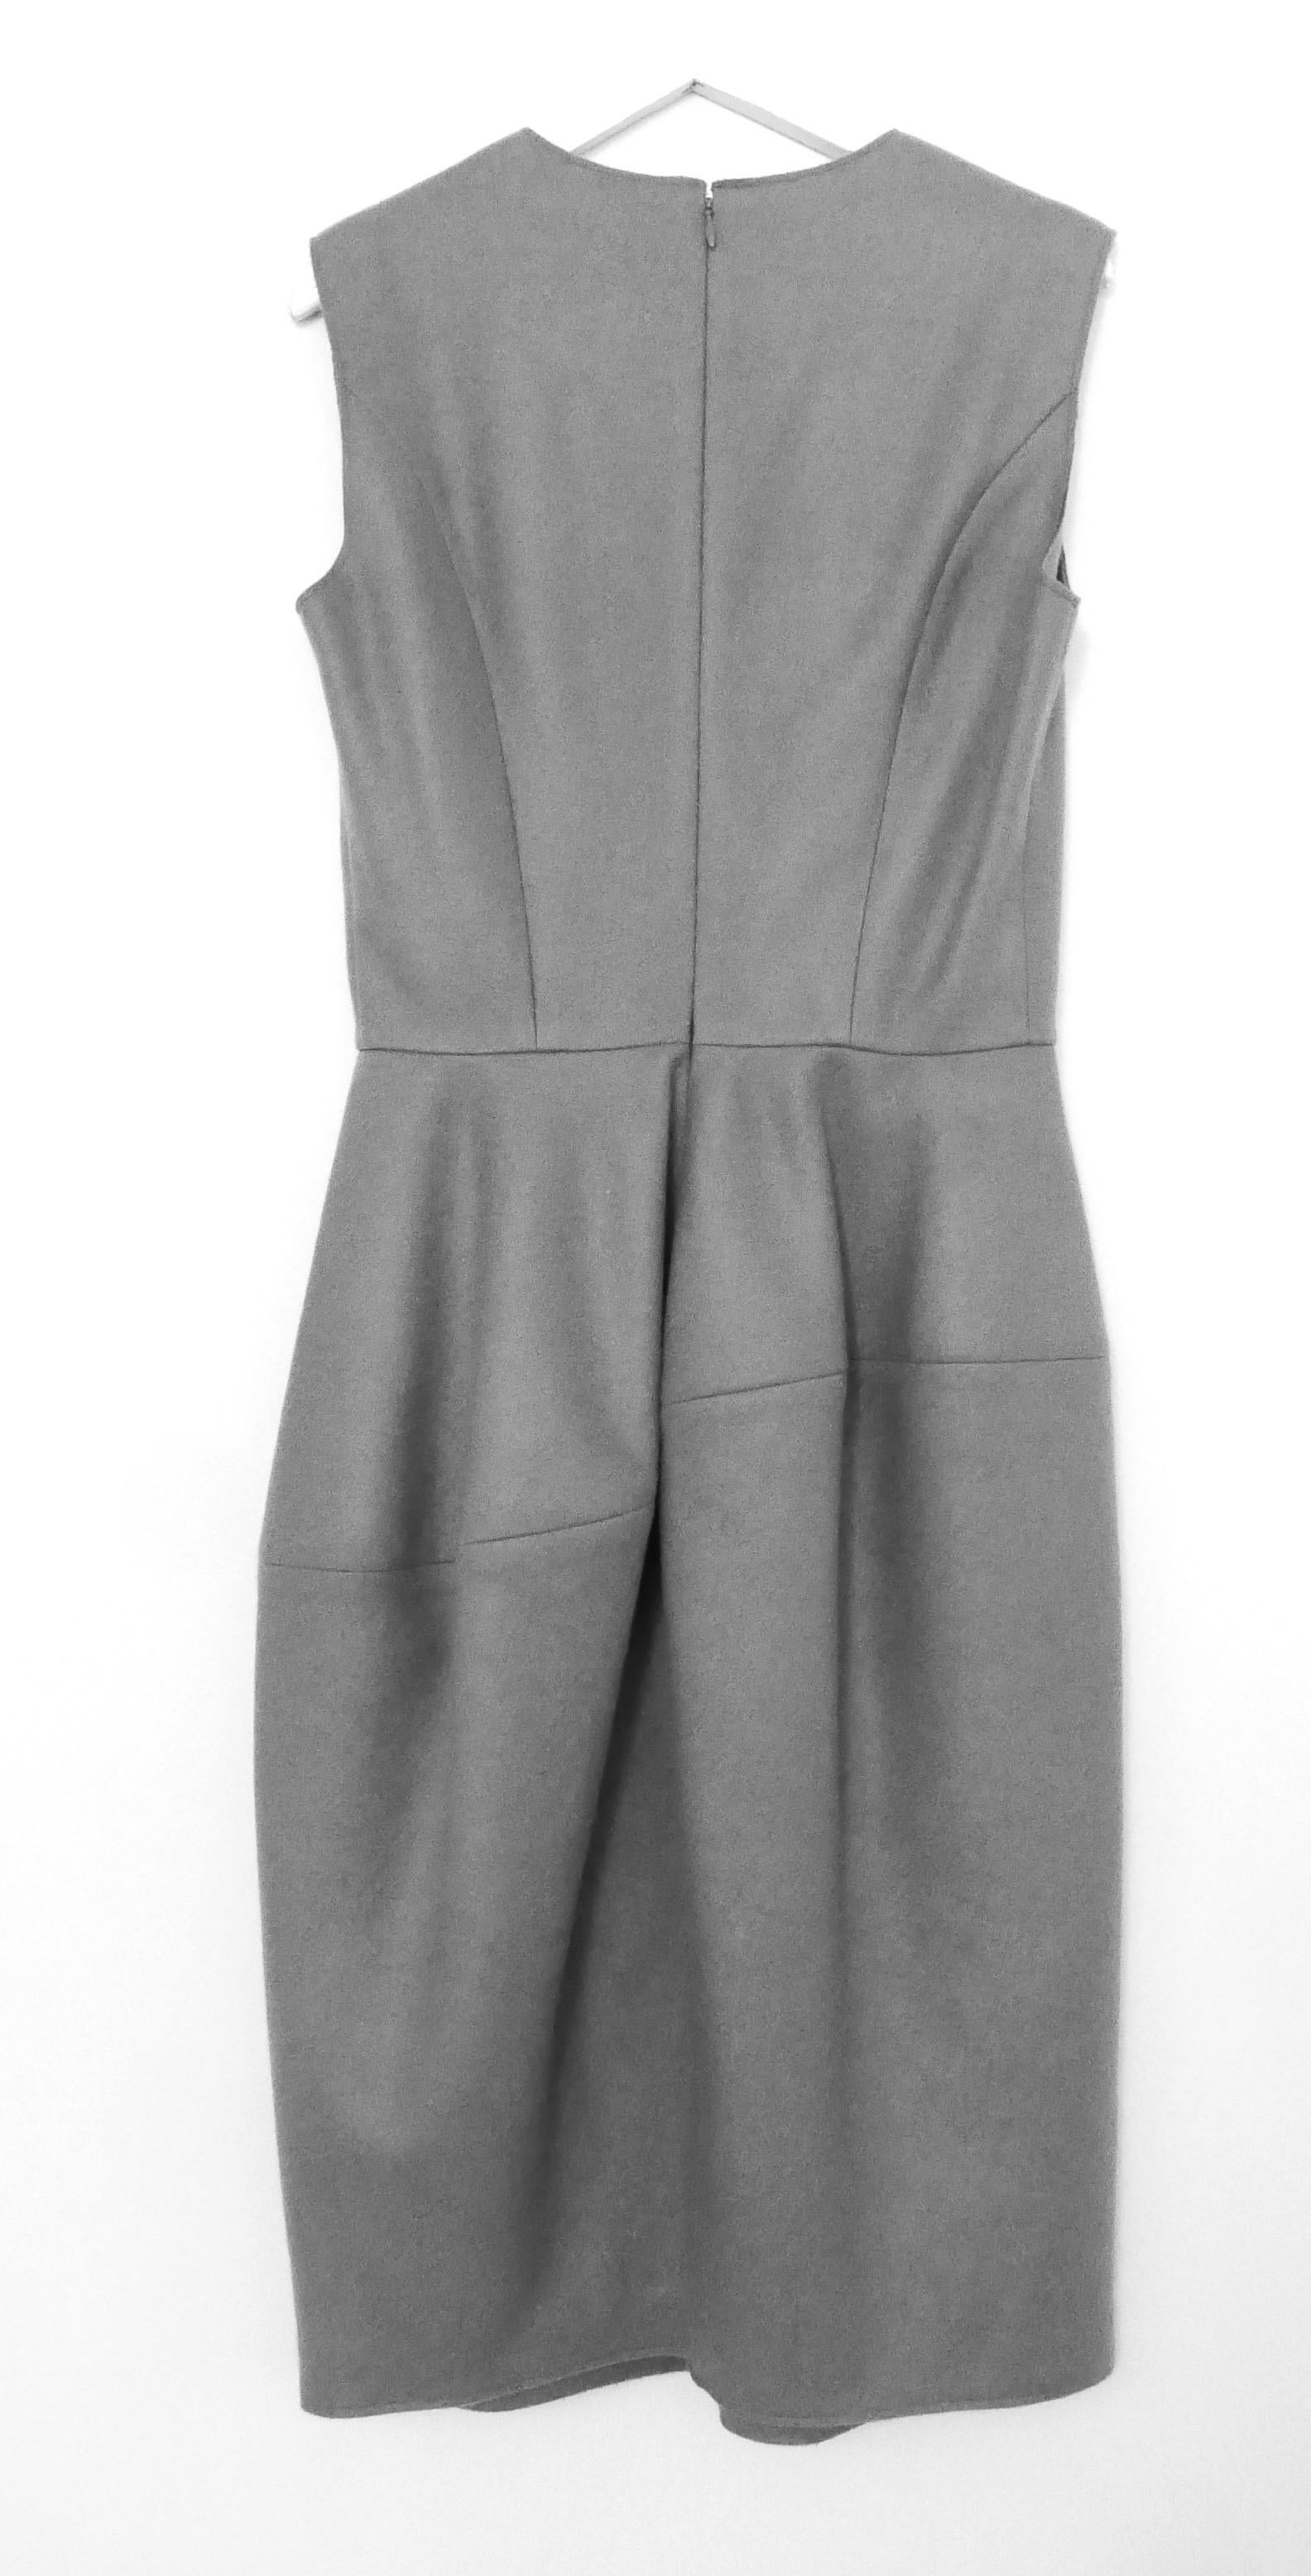 Gray Yves Saint Laurent x Stefano Pilati 2008 Grey Cashmere Bell Skirt Dress For Sale